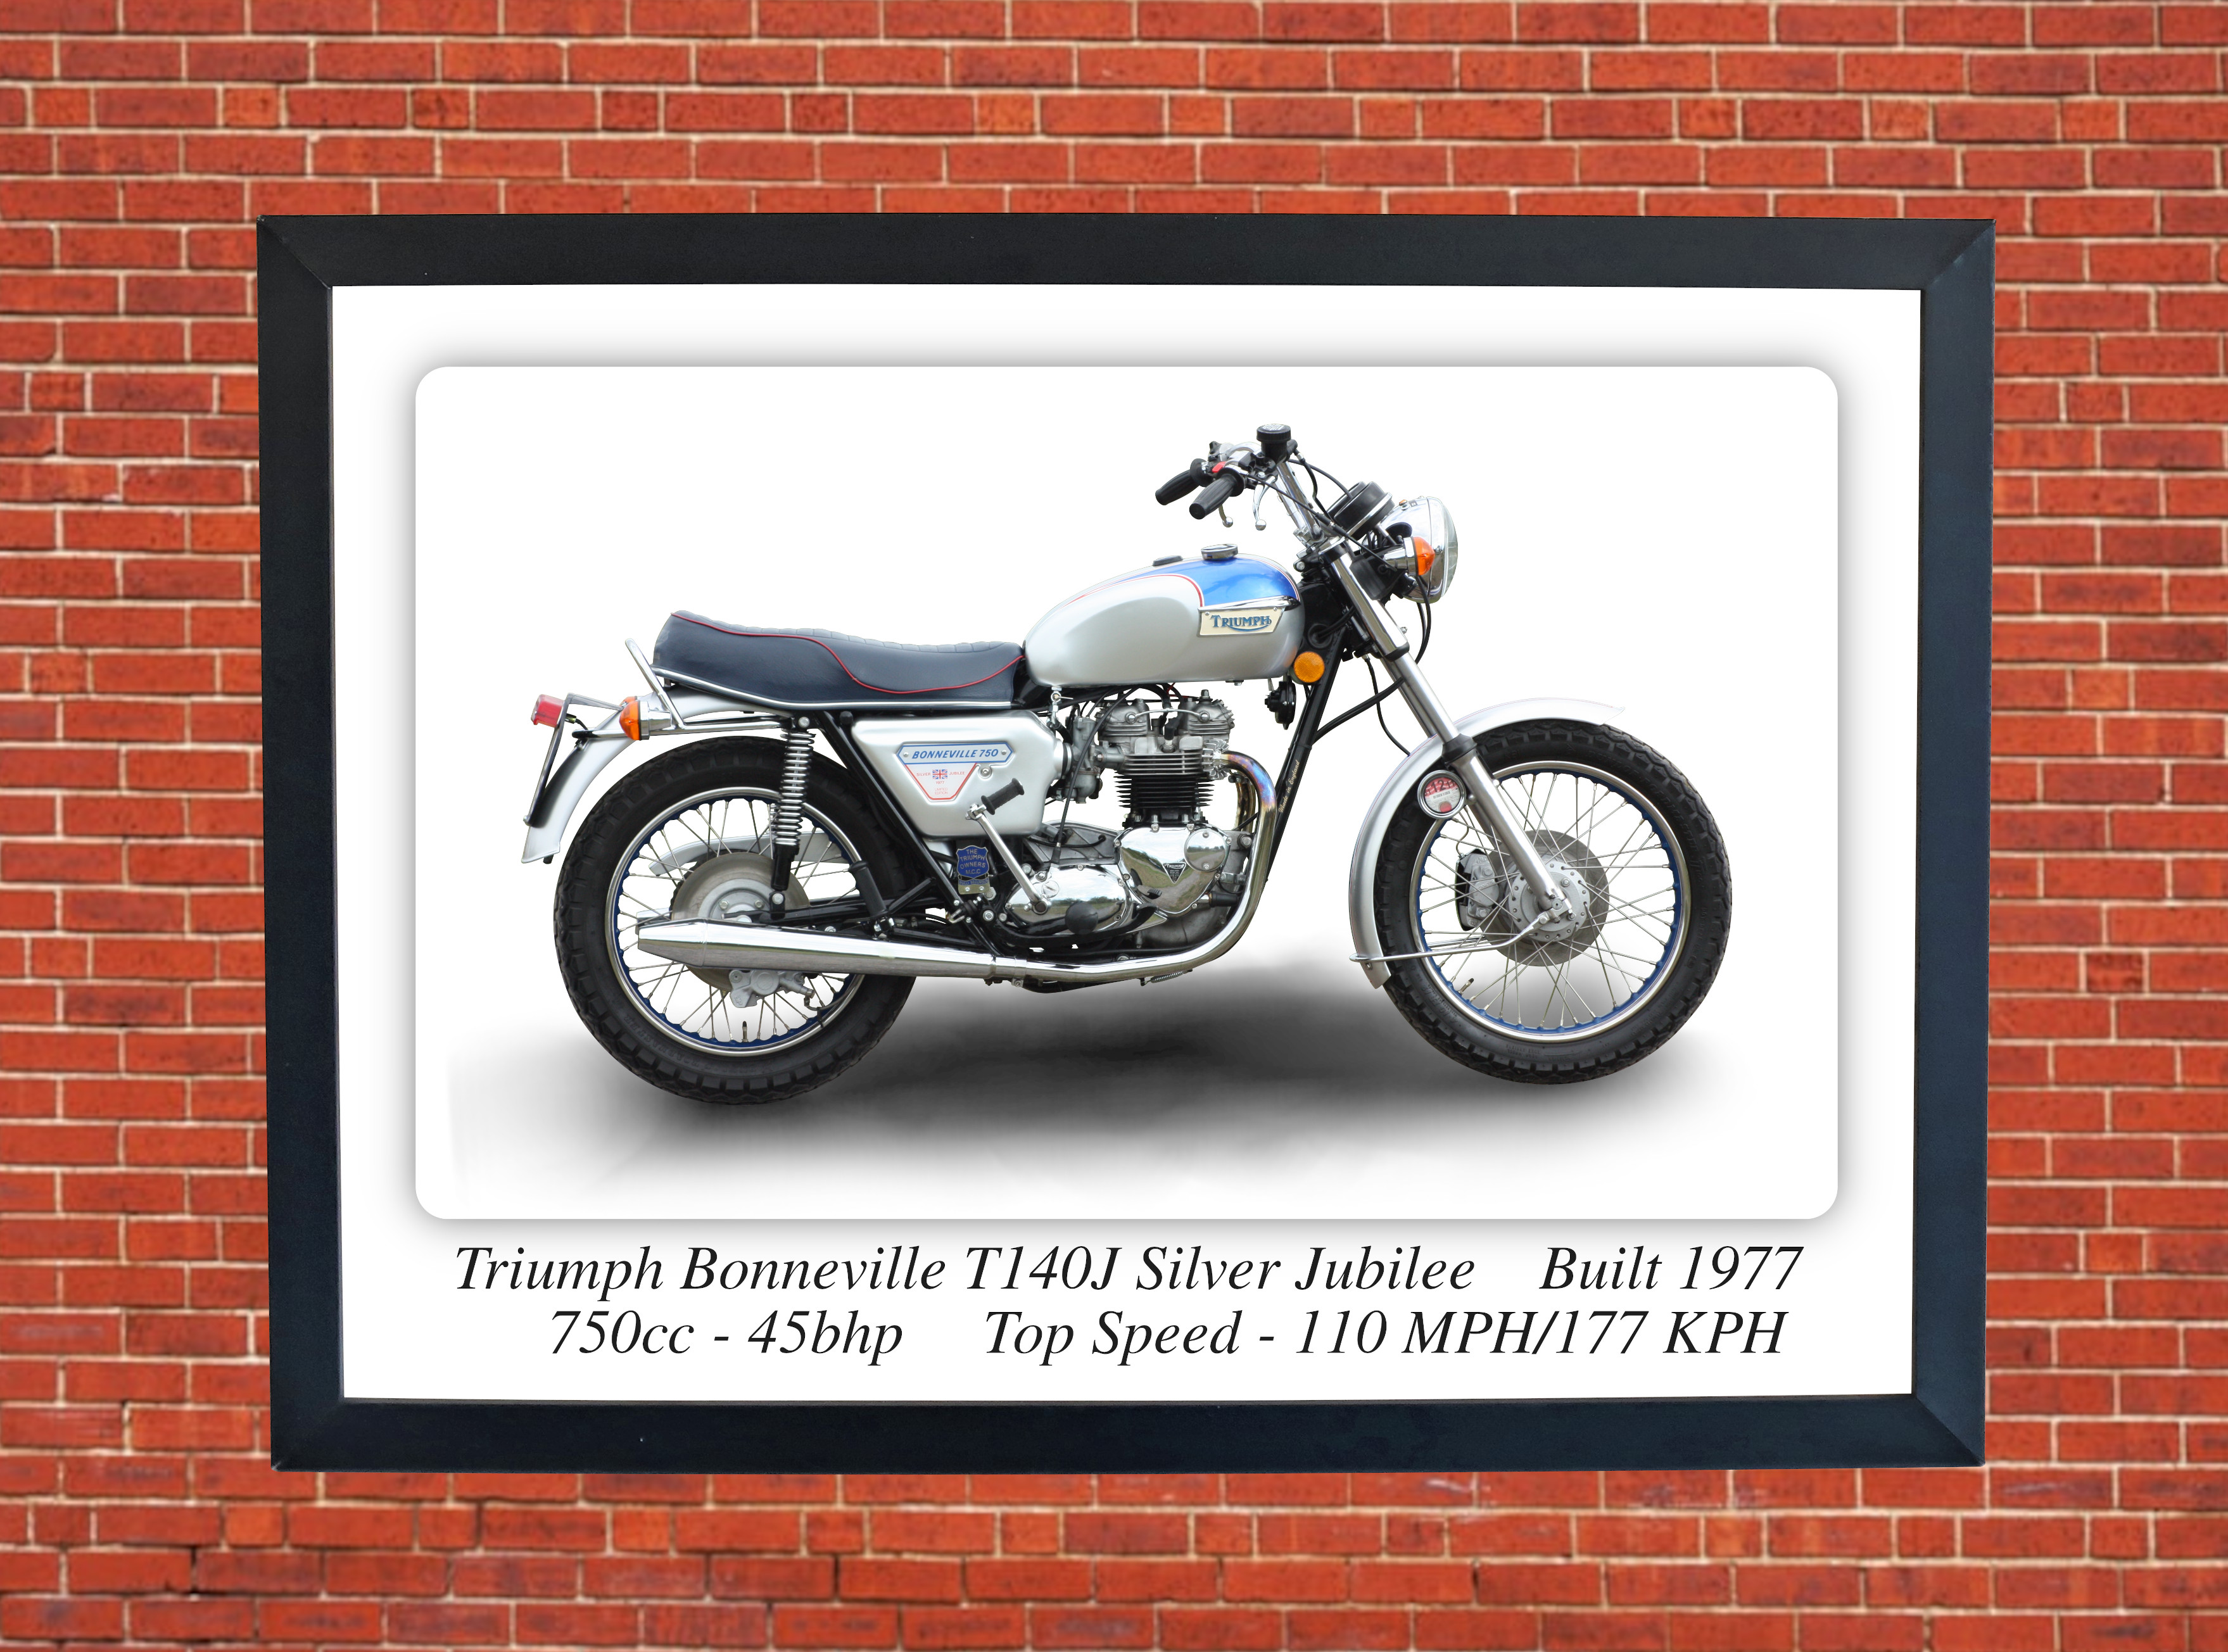 Triumph T140J Bonneville Silver Jubilee Motorcycle - A3 Size Print Poster